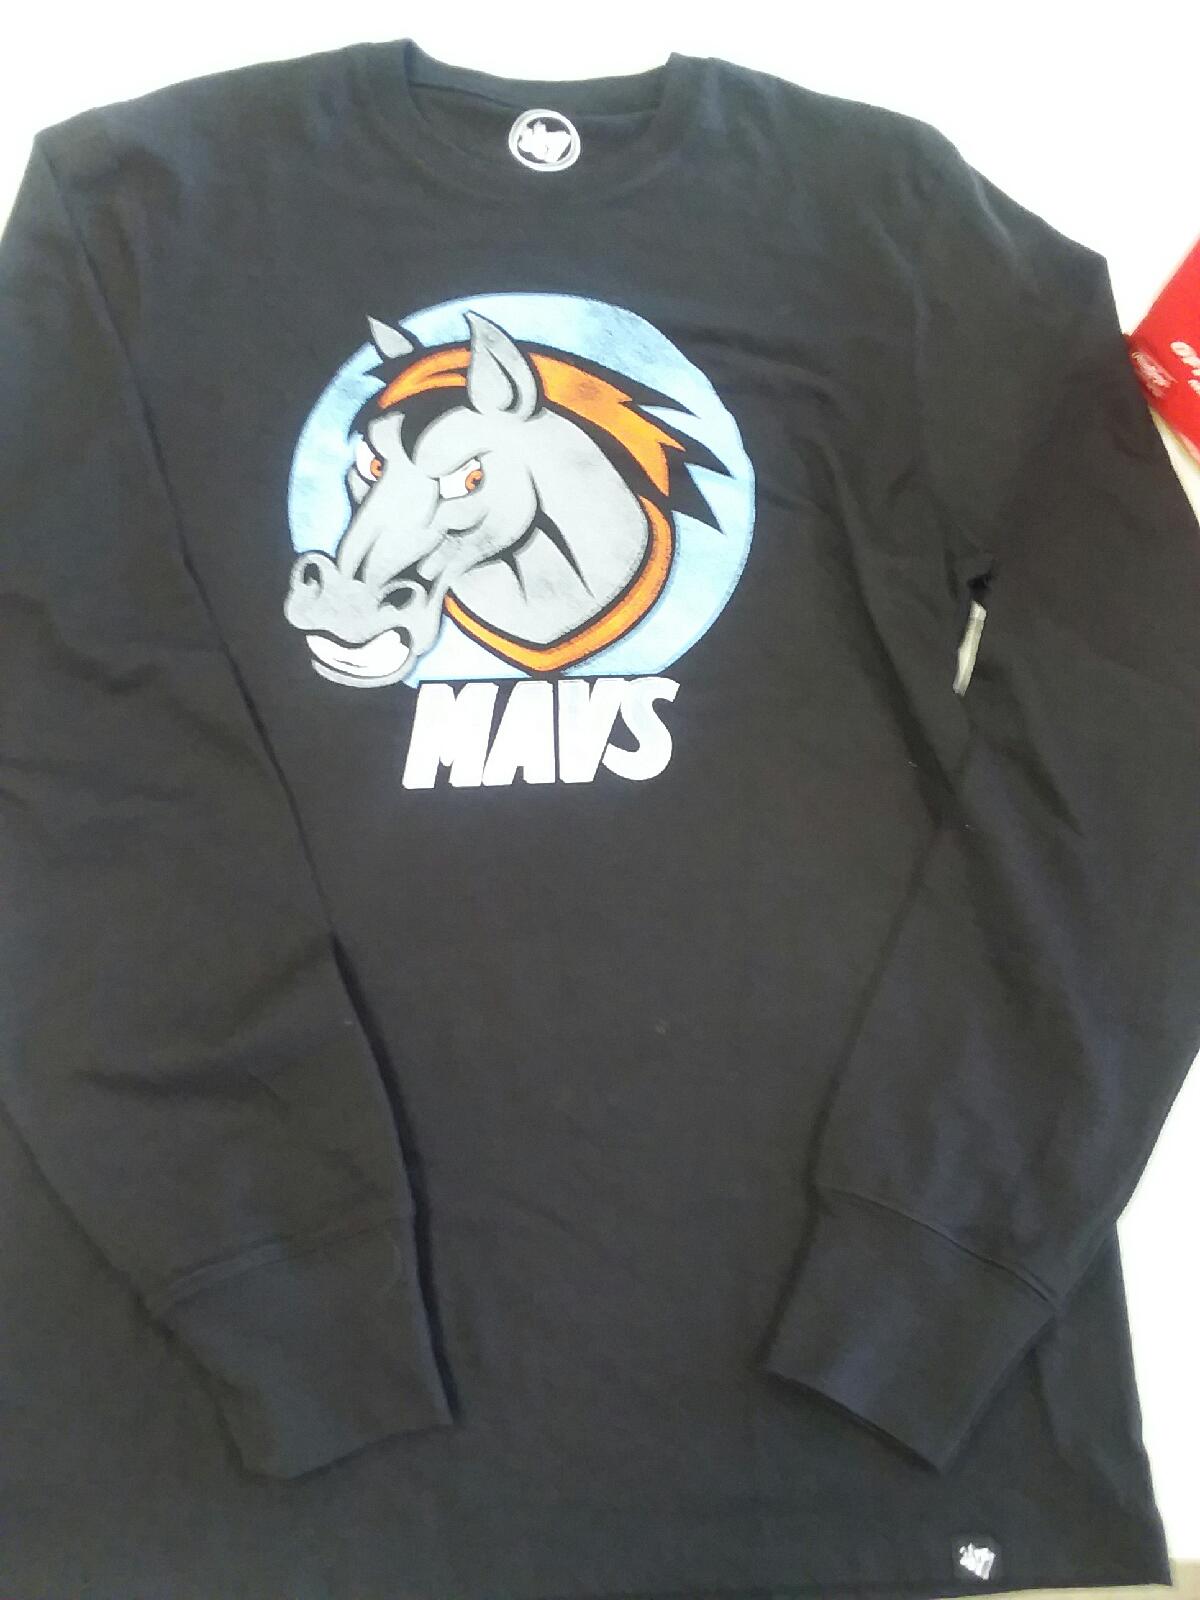 kansas city mavericks jersey for sale